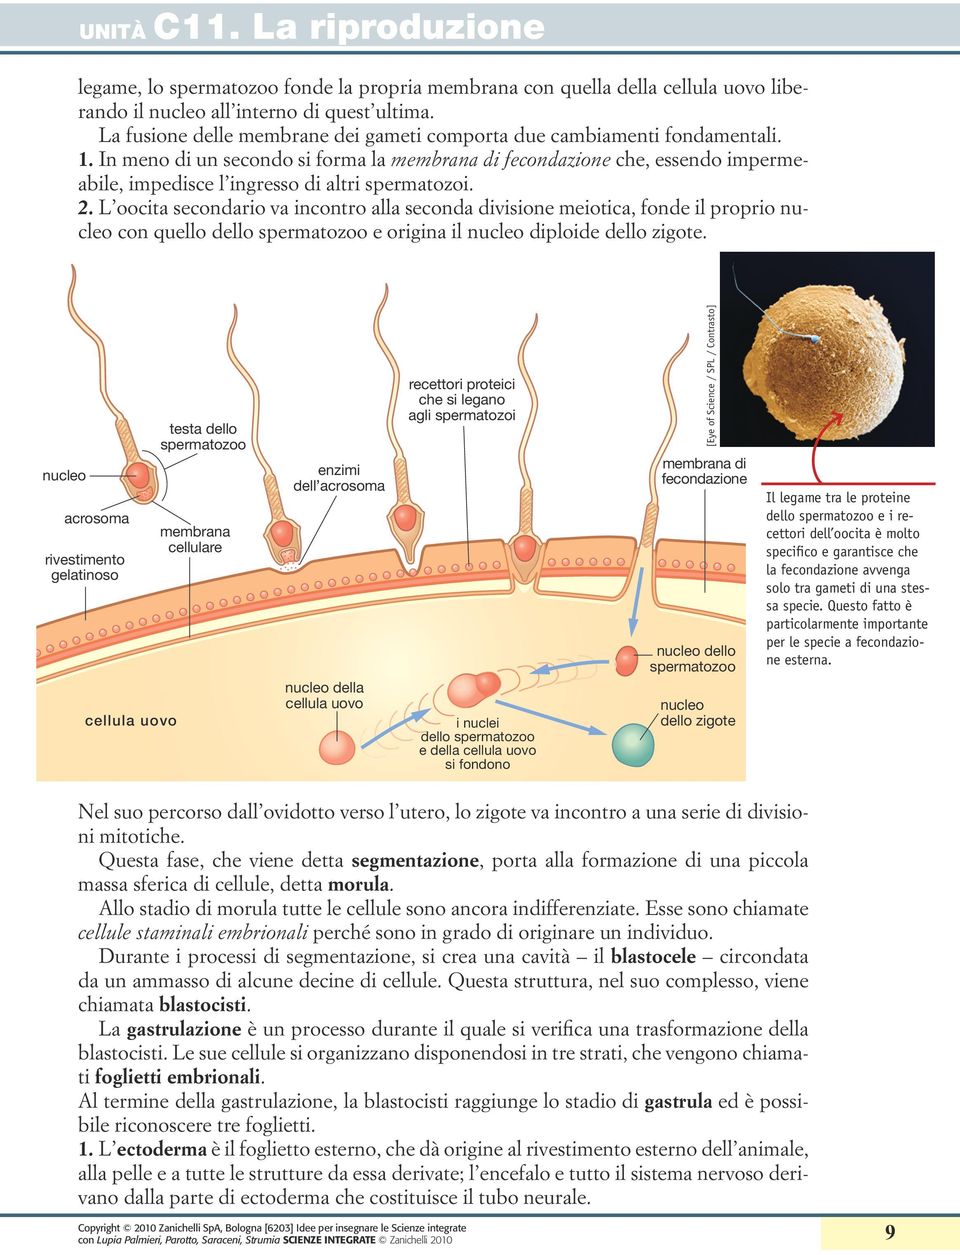 In meno di un secondo si forma la membrana di fecondazione che, essendo impermeabile, impedisce l ingresso di altri spermatozoi. 2.